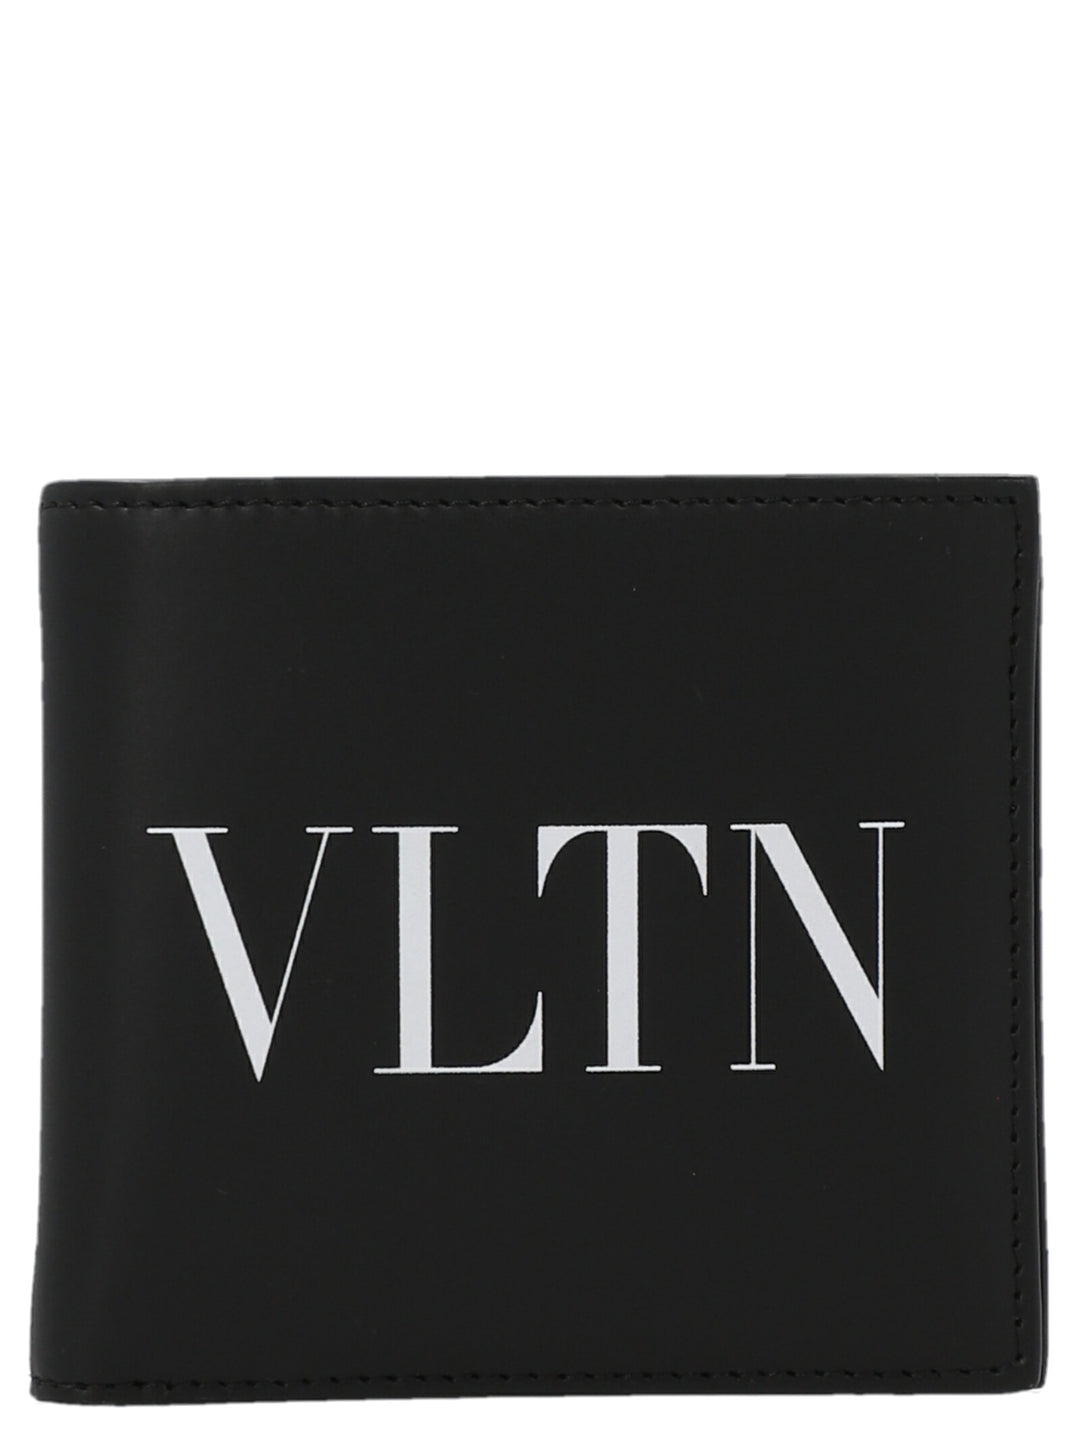 Valentino Garavani Vltn Wallet Portafogli Bianco/Nero